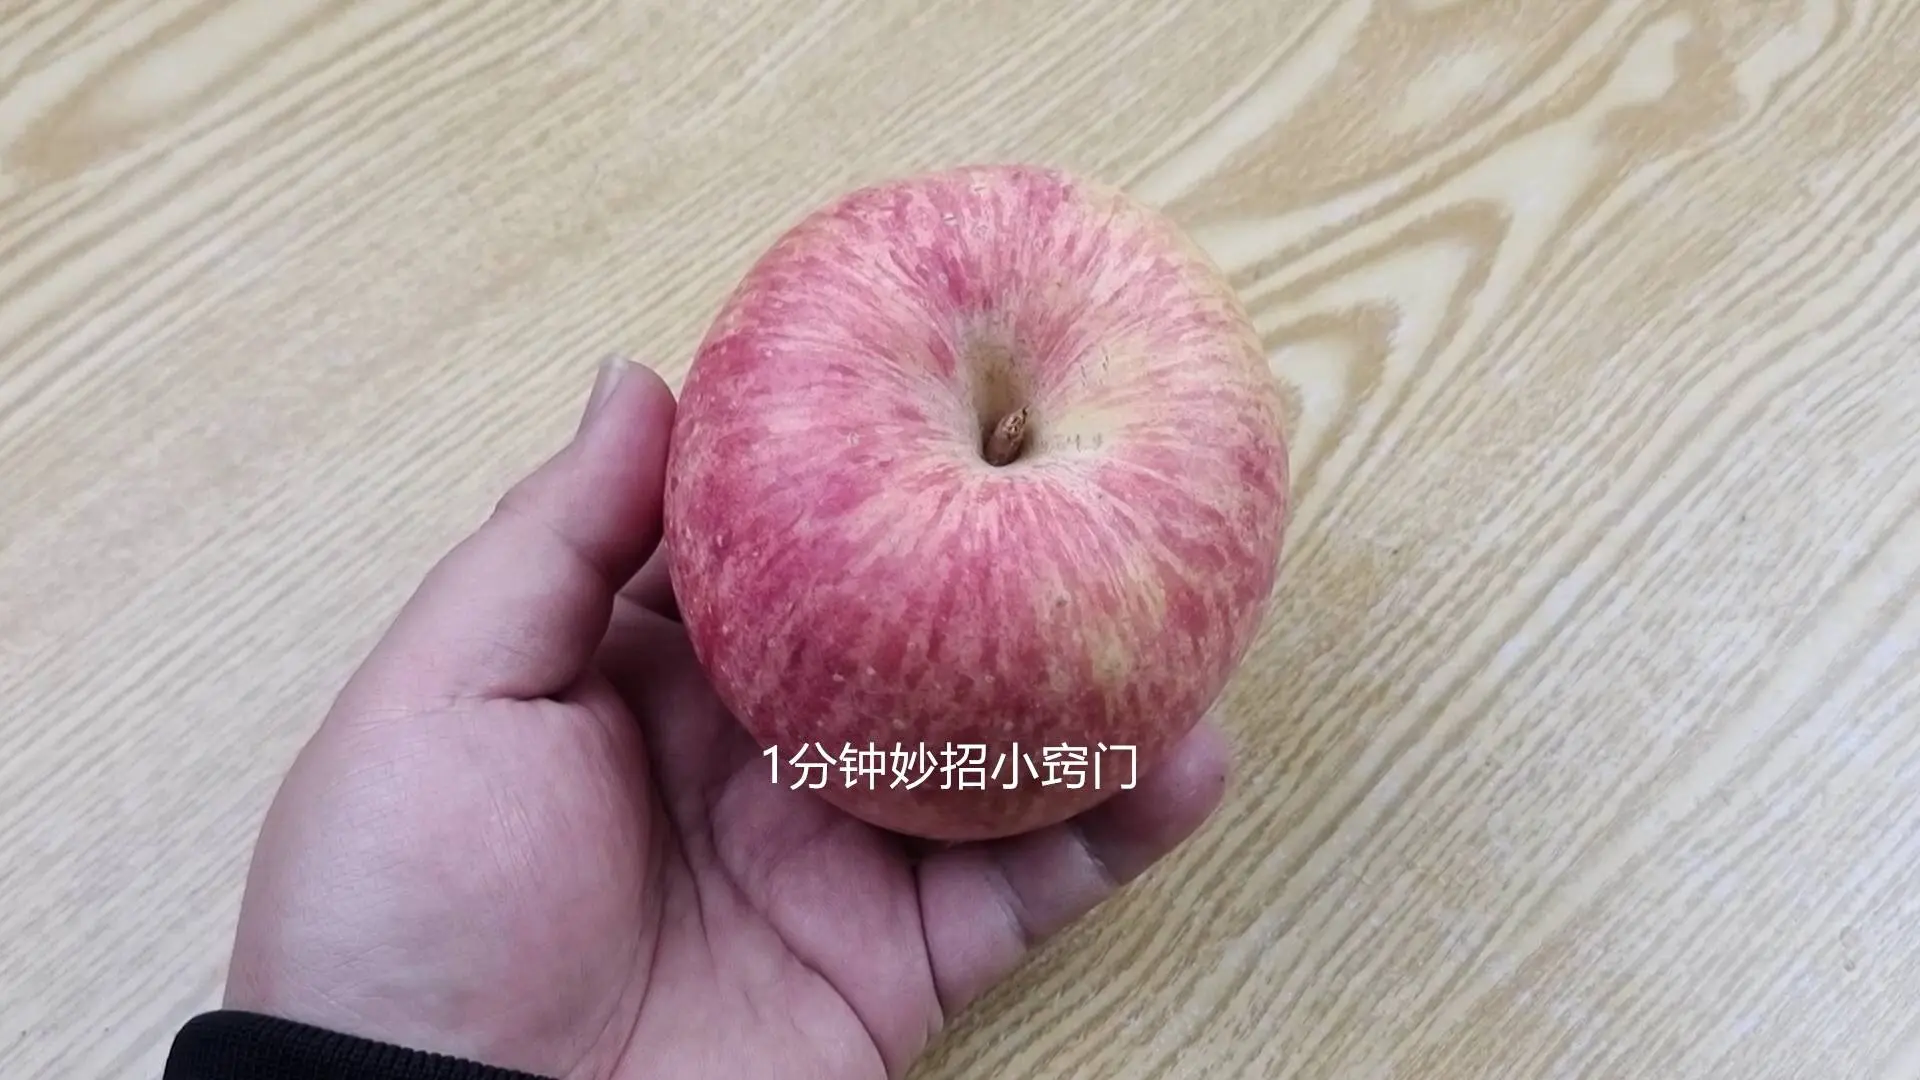 苹果烂了一小块，削掉以后，剩下部分能不能吃？好多人还不清楚 - 知乎